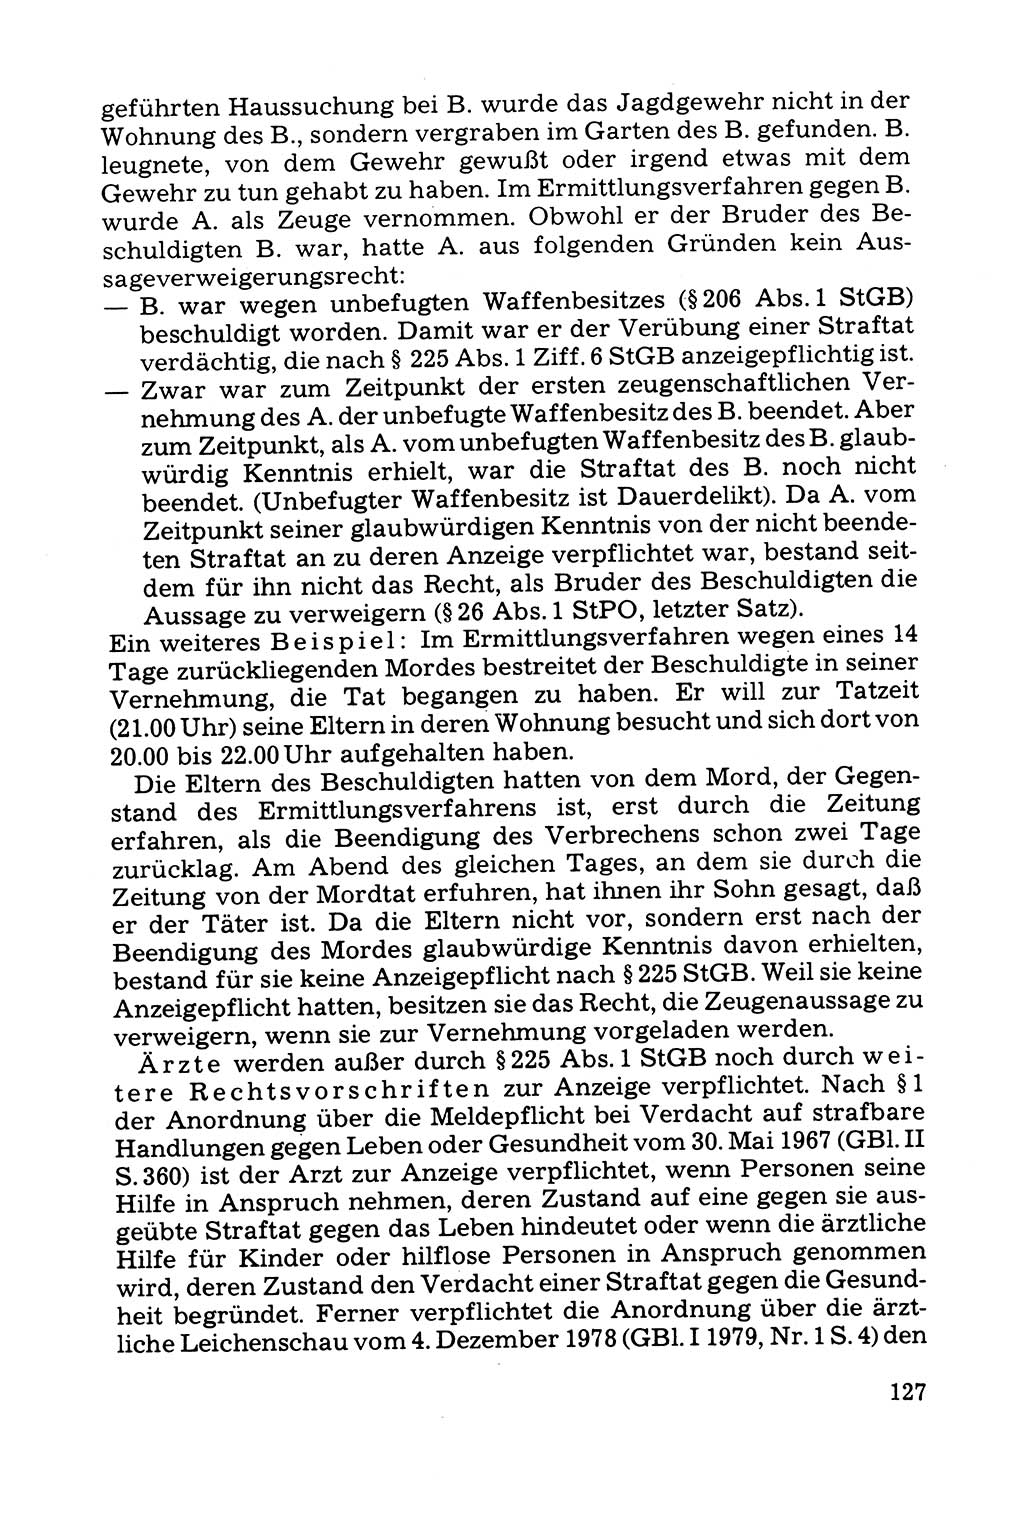 Grundfragen der Beweisführung im Ermittlungsverfahren [Deutsche Demokratische Republik (DDR)] 1980, Seite 127 (Bws.-Fhrg. EV DDR 1980, S. 127)